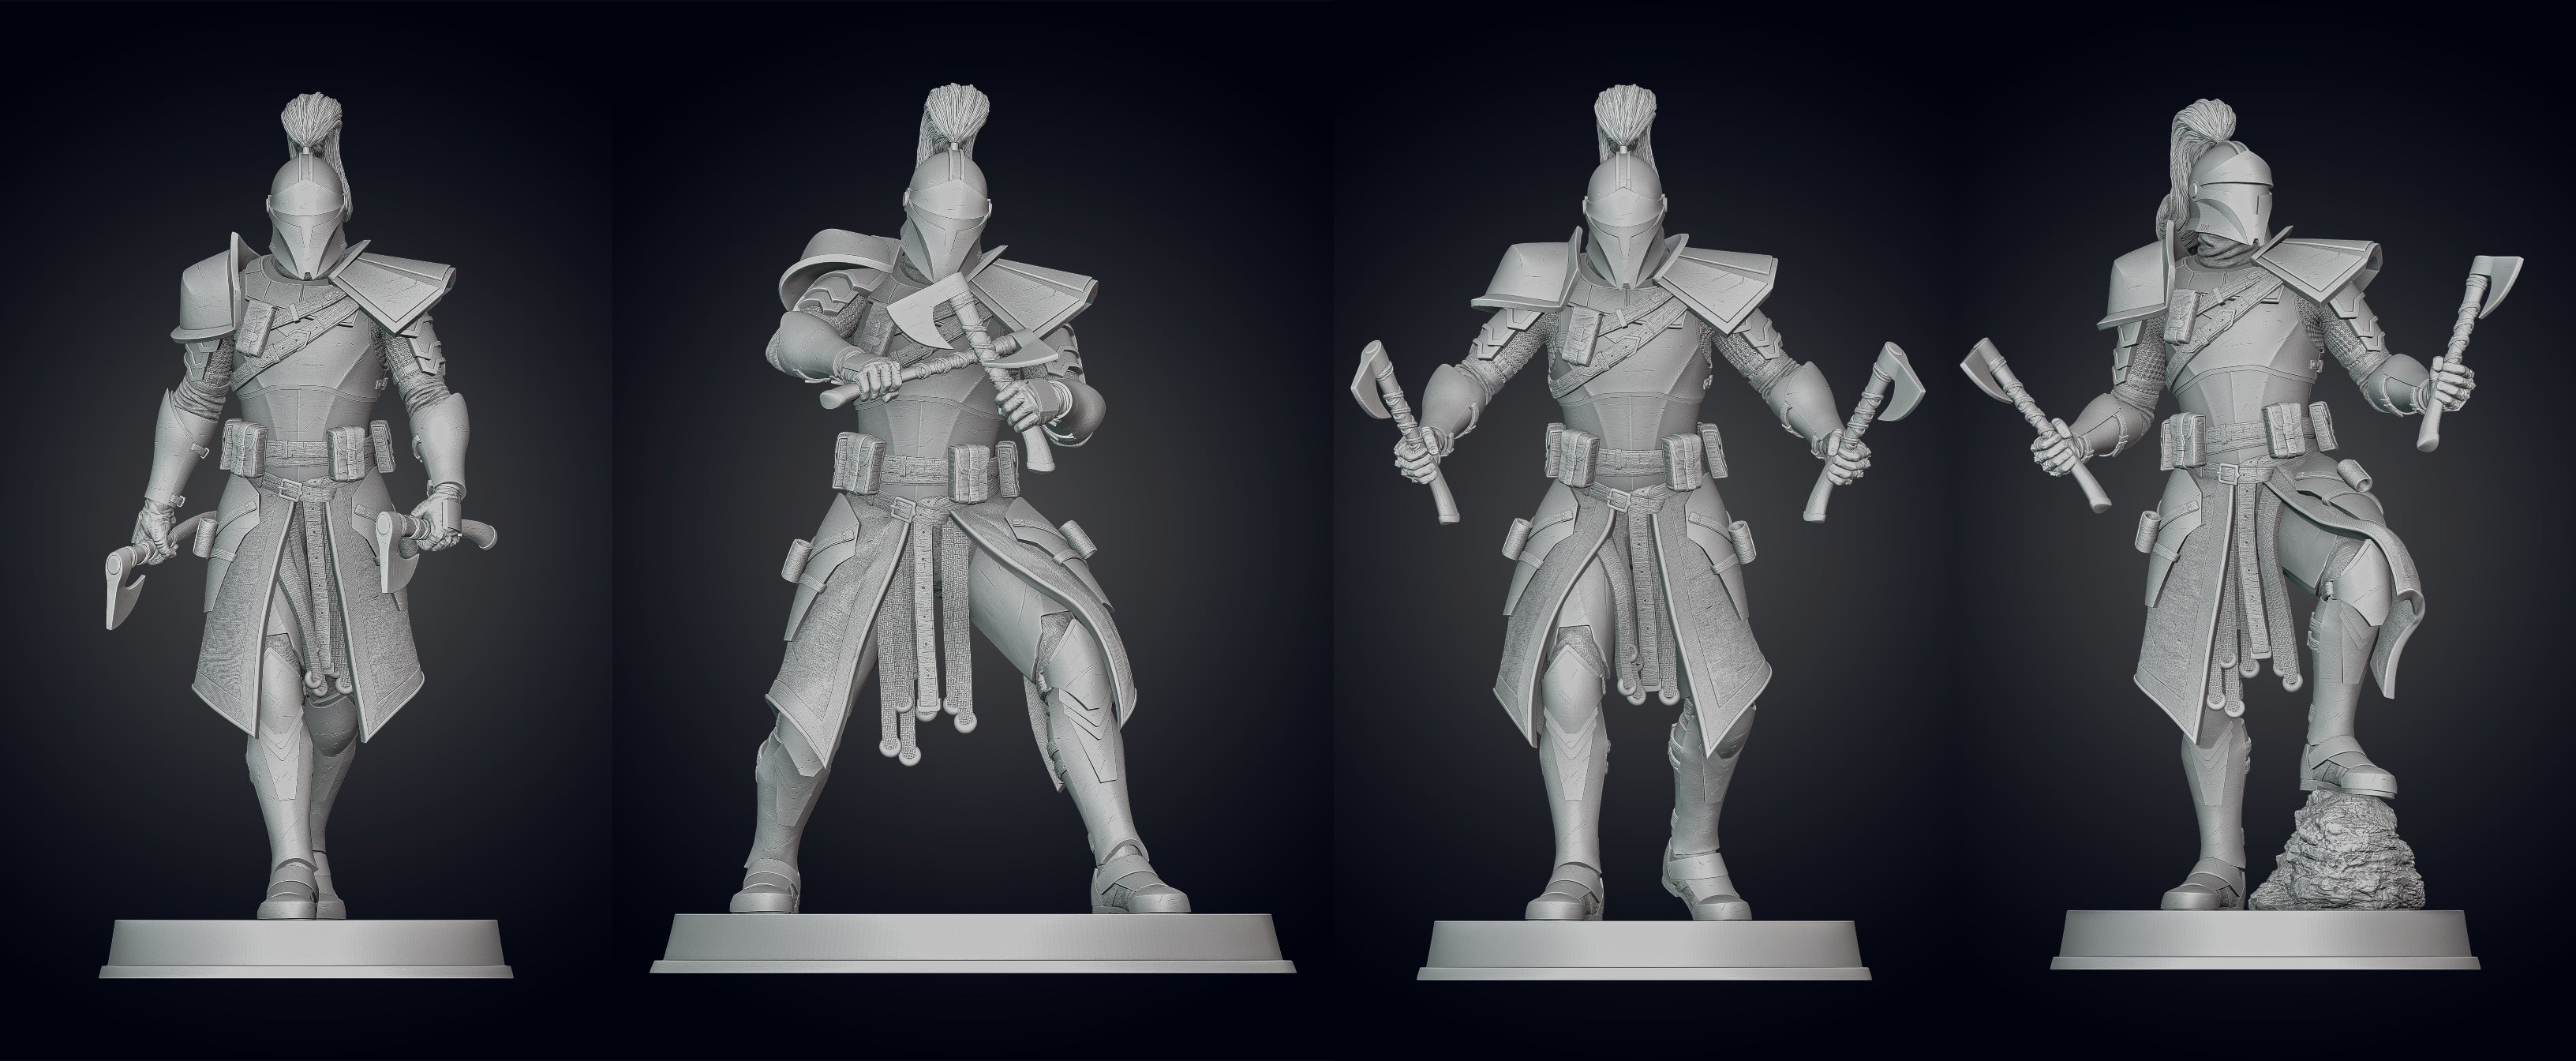 Medieval Captain Rex Figurine - BUNDLE - 3D Print Files